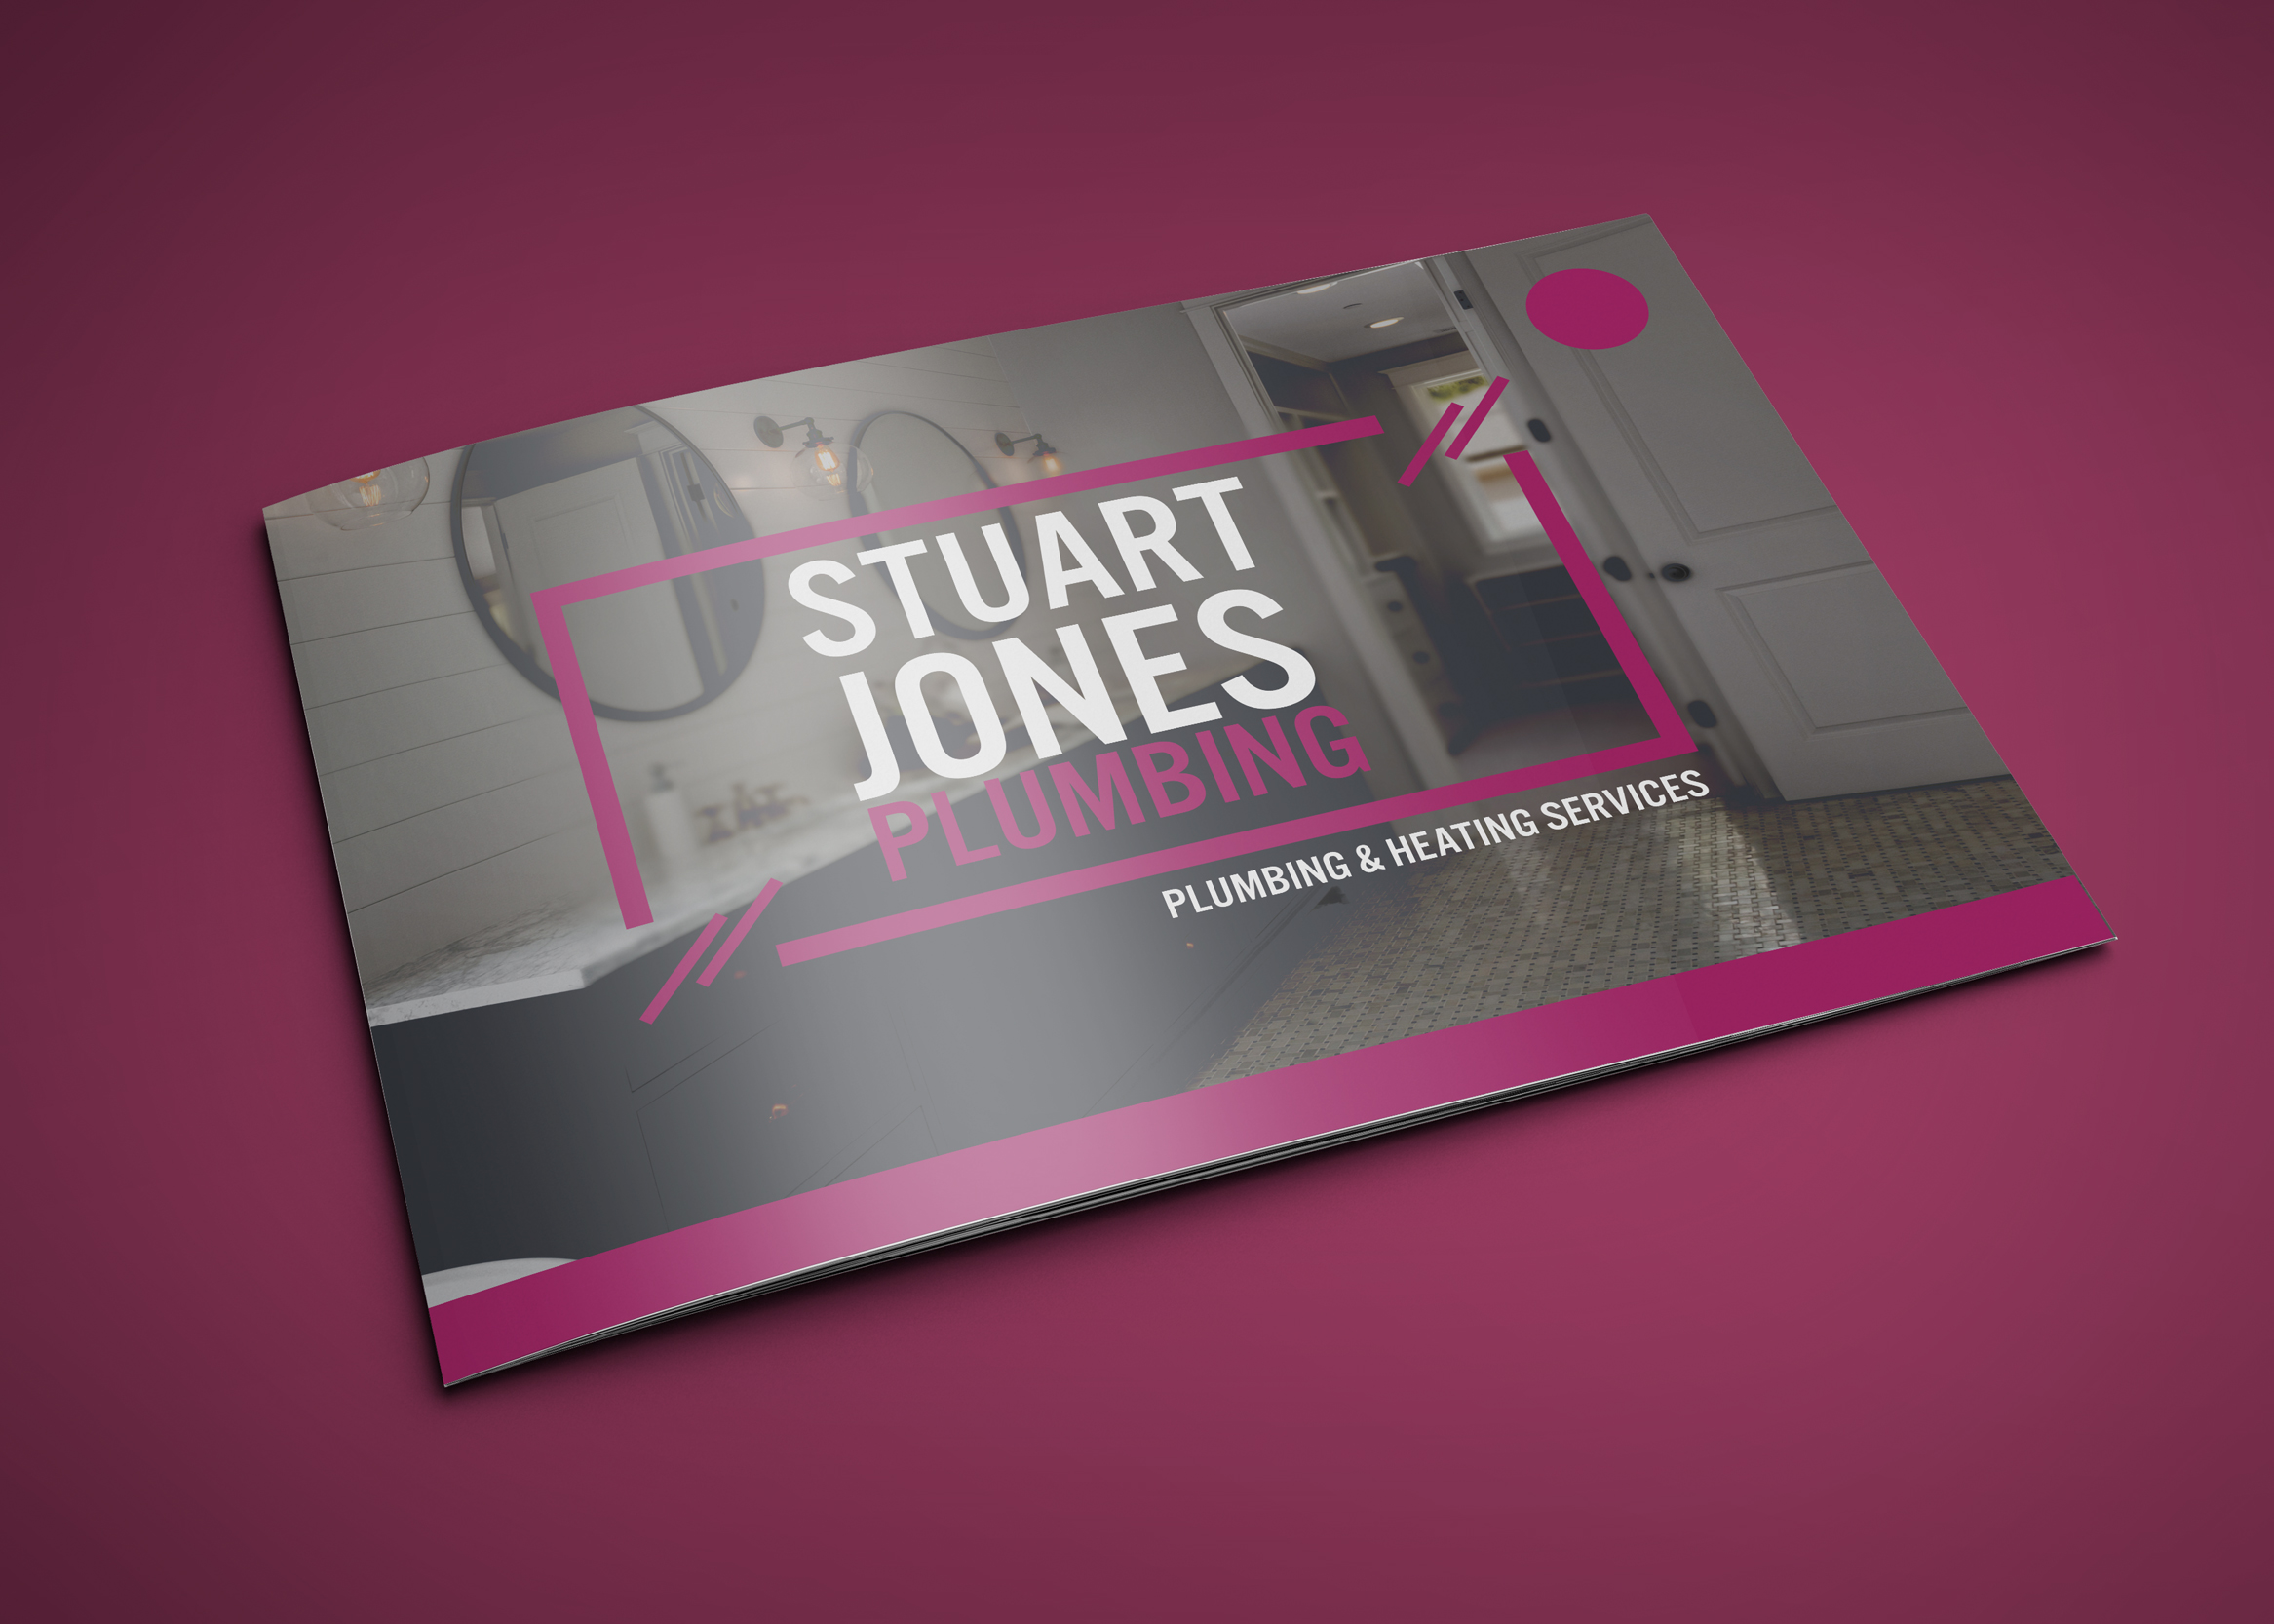 Stuart Jones Plumbing